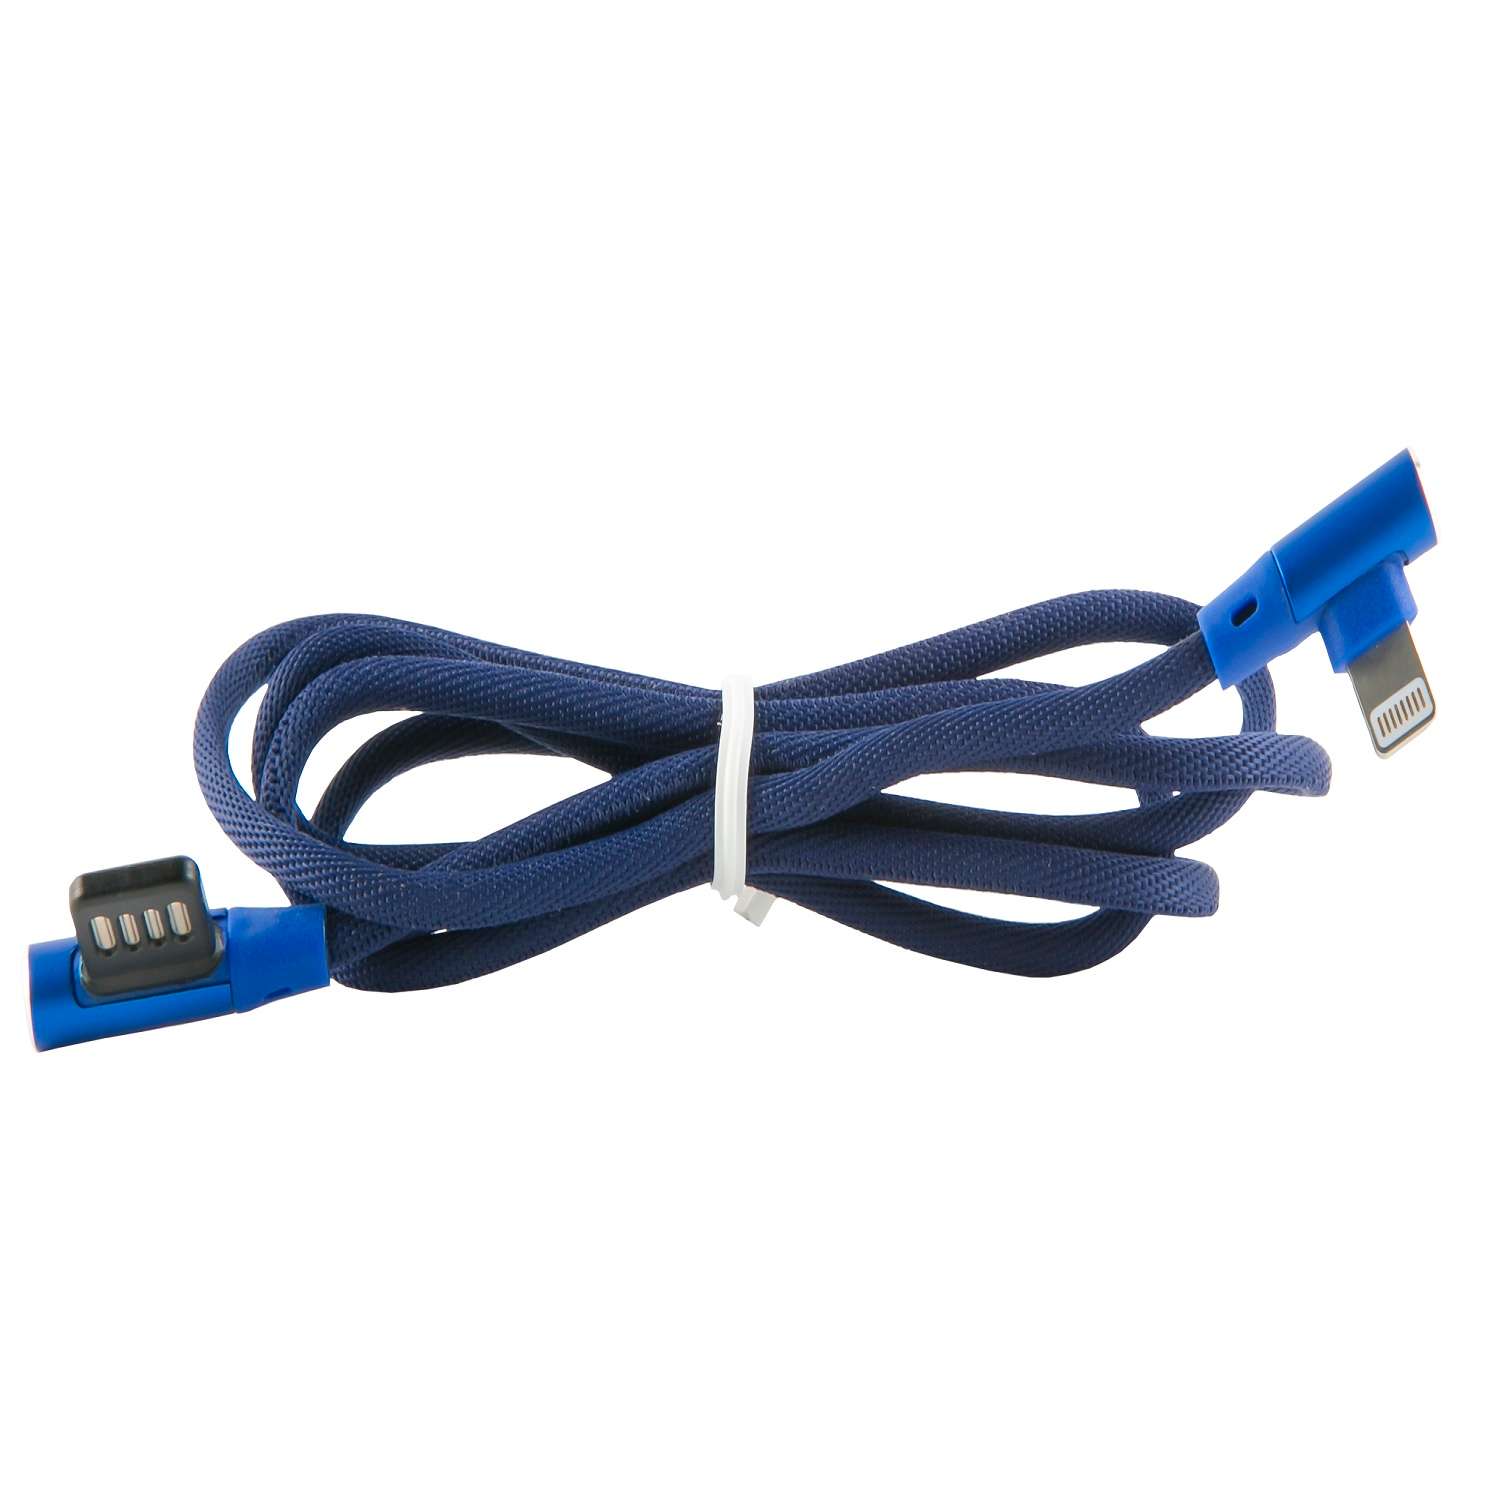 Кабель Red line Fit USB. Red line кабель fishnet синий. Кабель интерфейсный Red line Fit USB-Micro USB. Молния голубая РБГ. Кабель red line